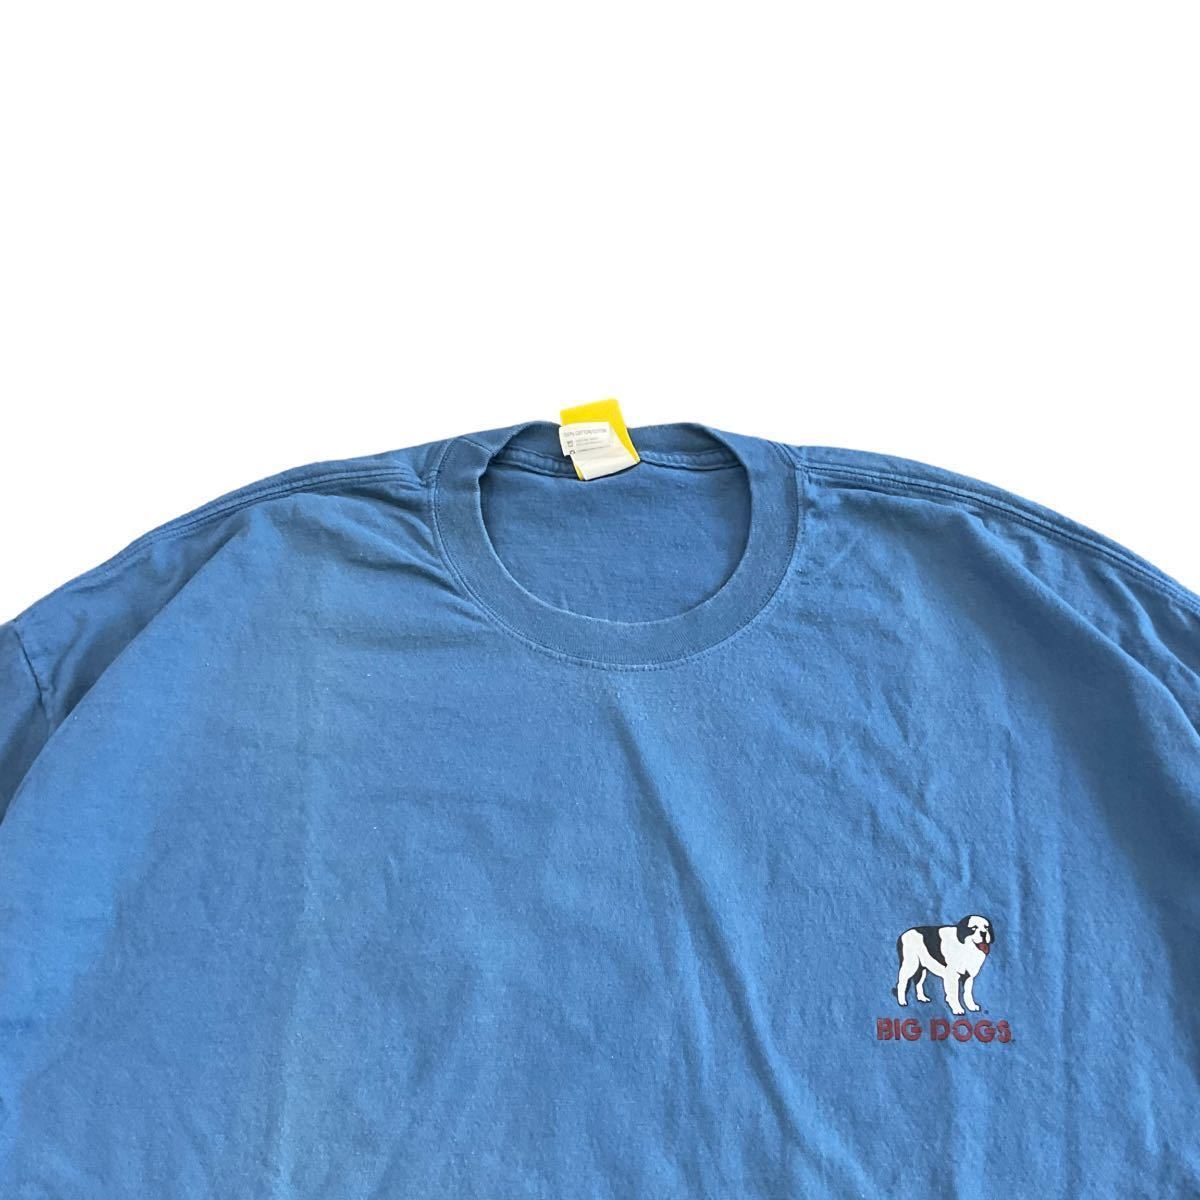 00s BIG DOGS 半袖 Tシャツ 3XL ブルー DOG 犬 コットン ワンポイント ロゴ ビッグドッグ_画像4